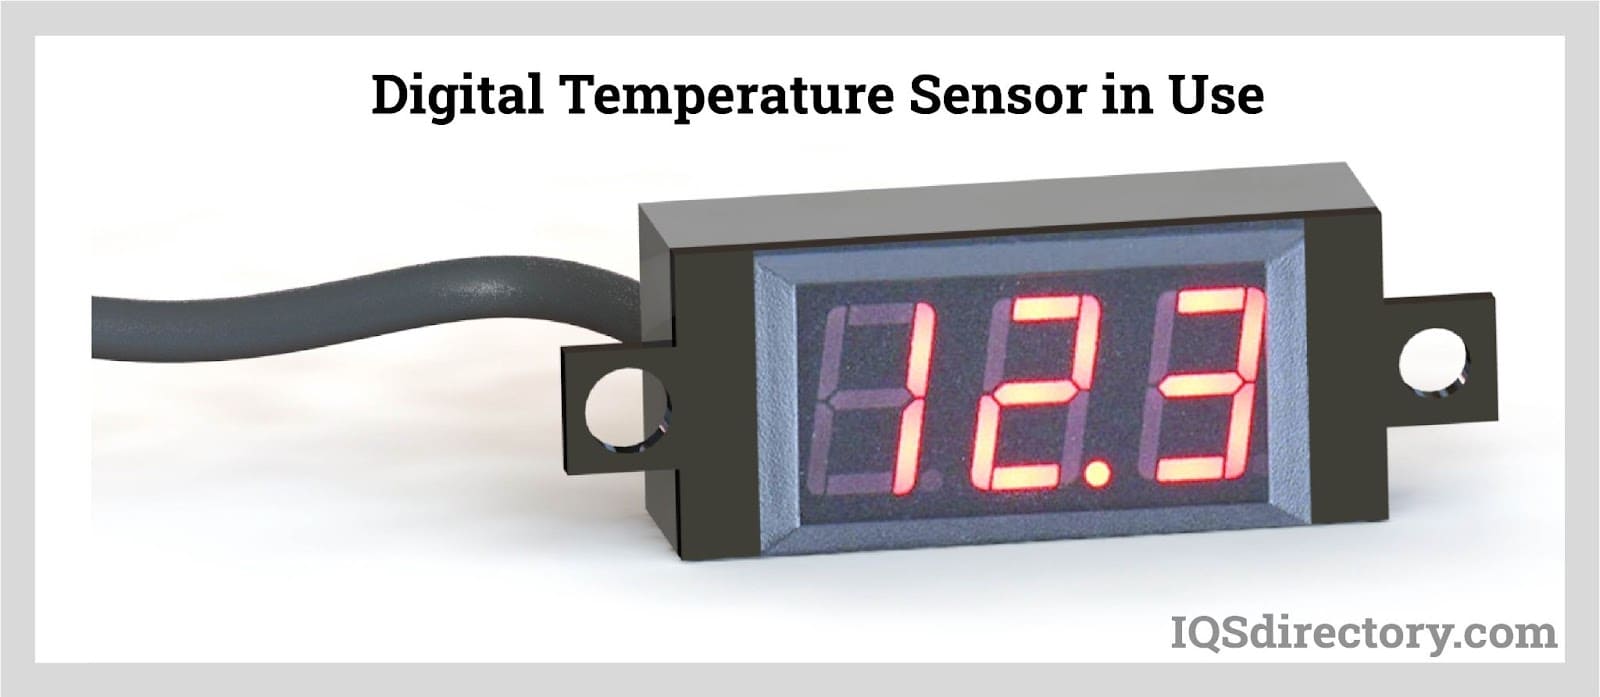 Temperature Sensors